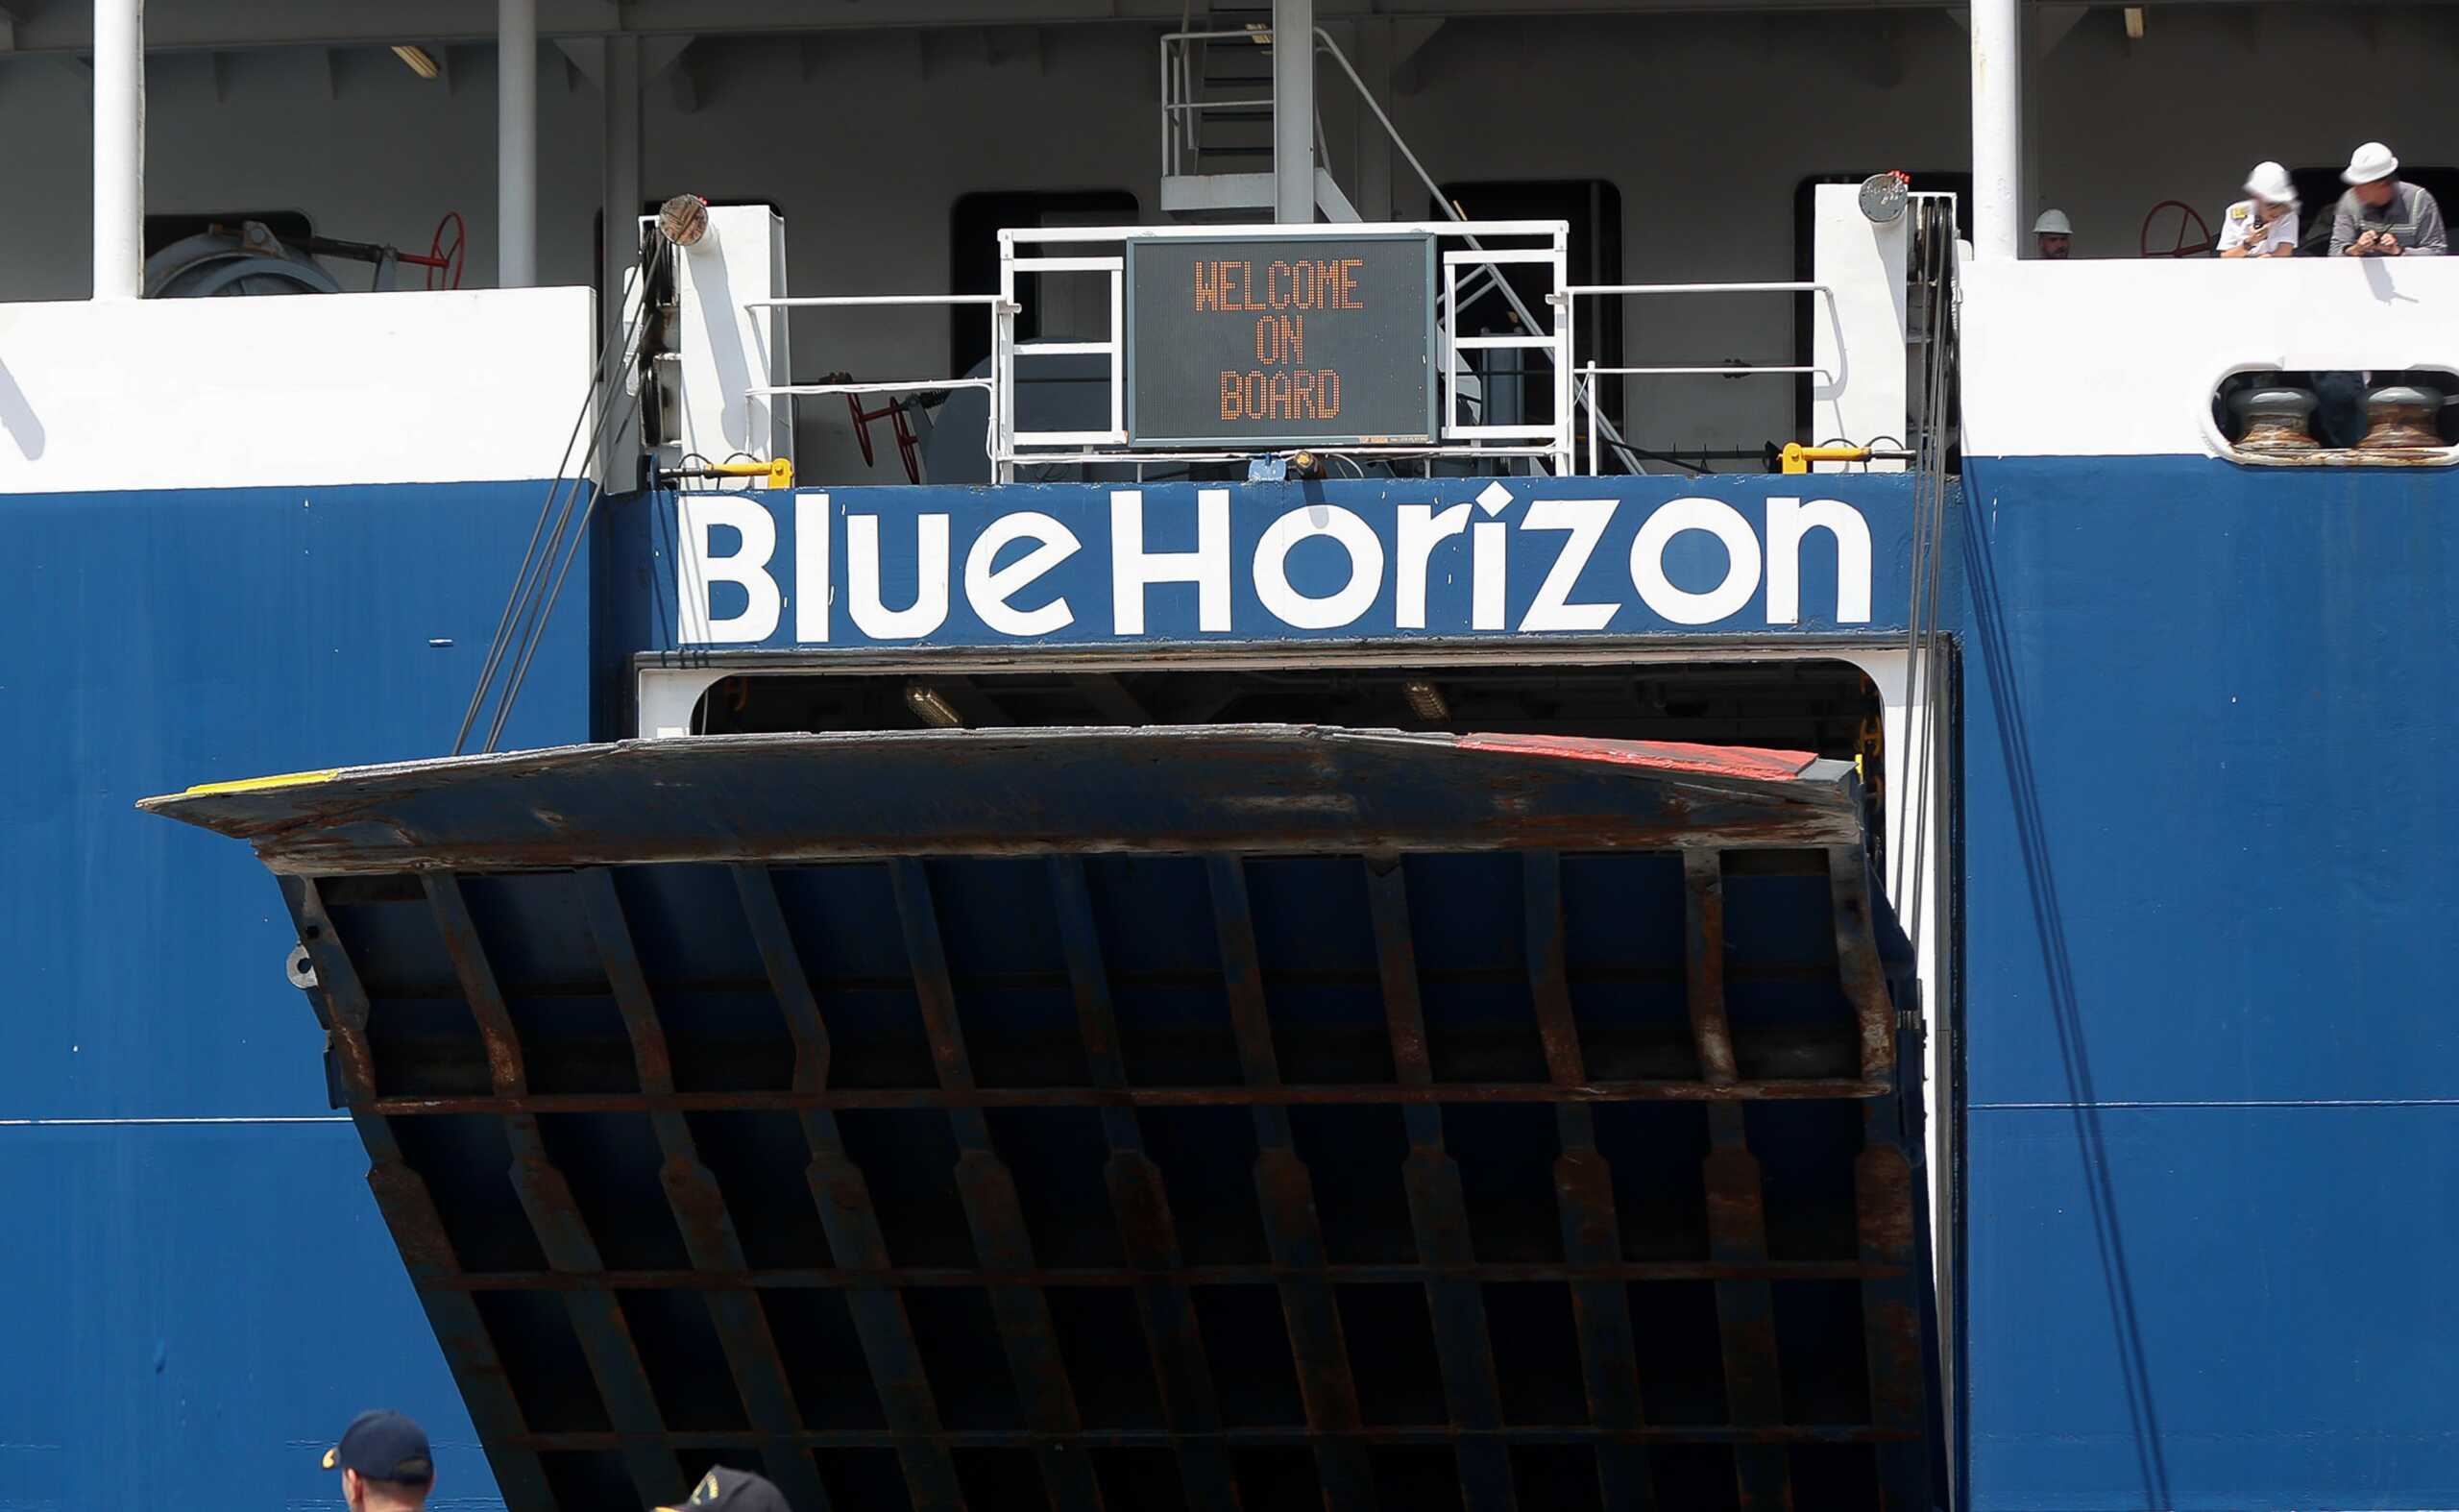 Blue Horizon: Μυστήριο με το άτομο που ενημέρωσε ο πλοίαρχος για τα γεγονότα που οδήγησαν στον θάνατο τον 36χρονο